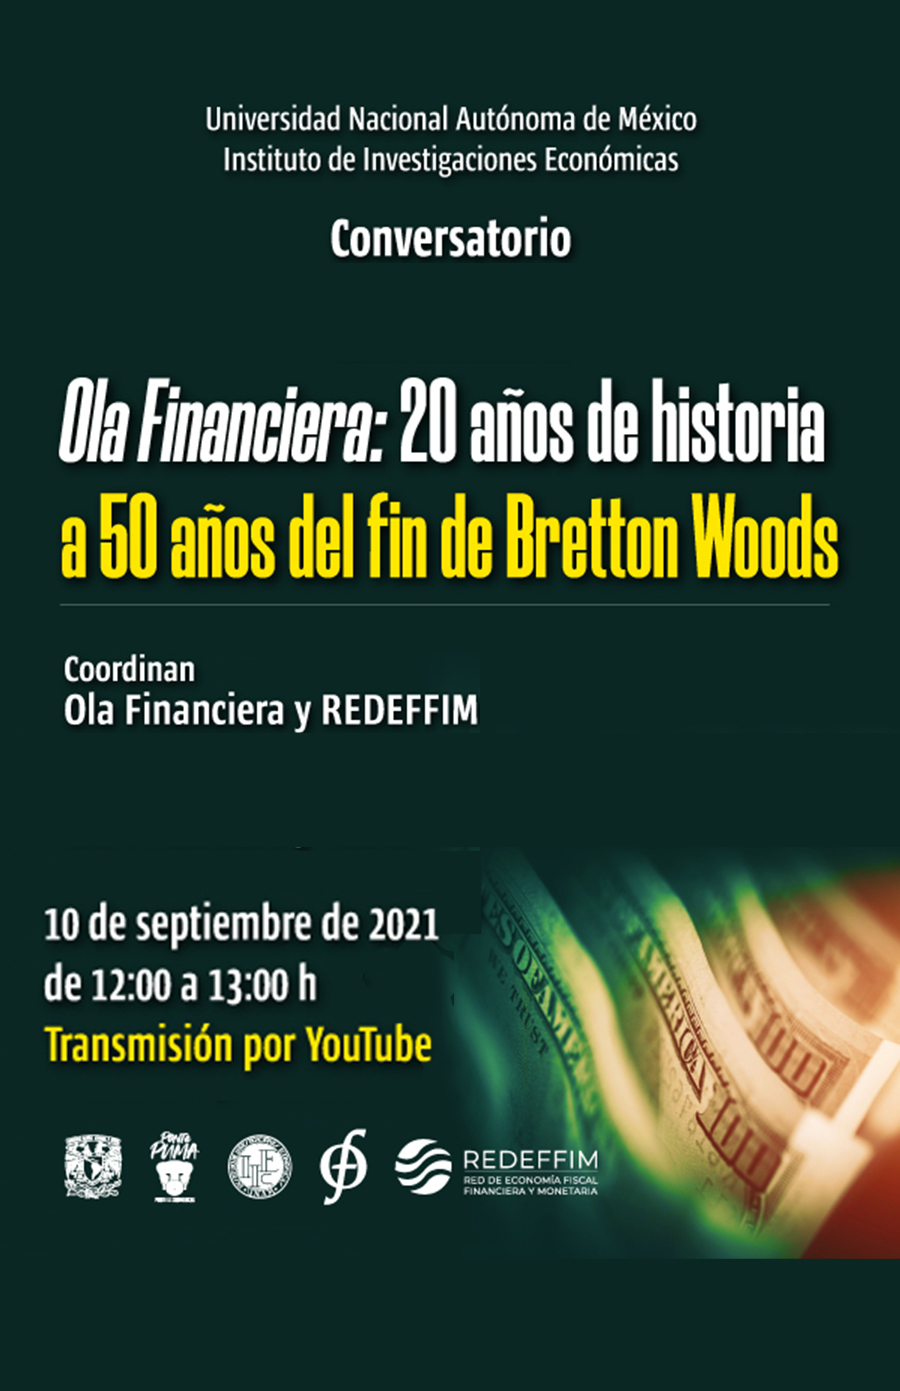 Conversatorio: A 50 años del fin de Bretton Woods